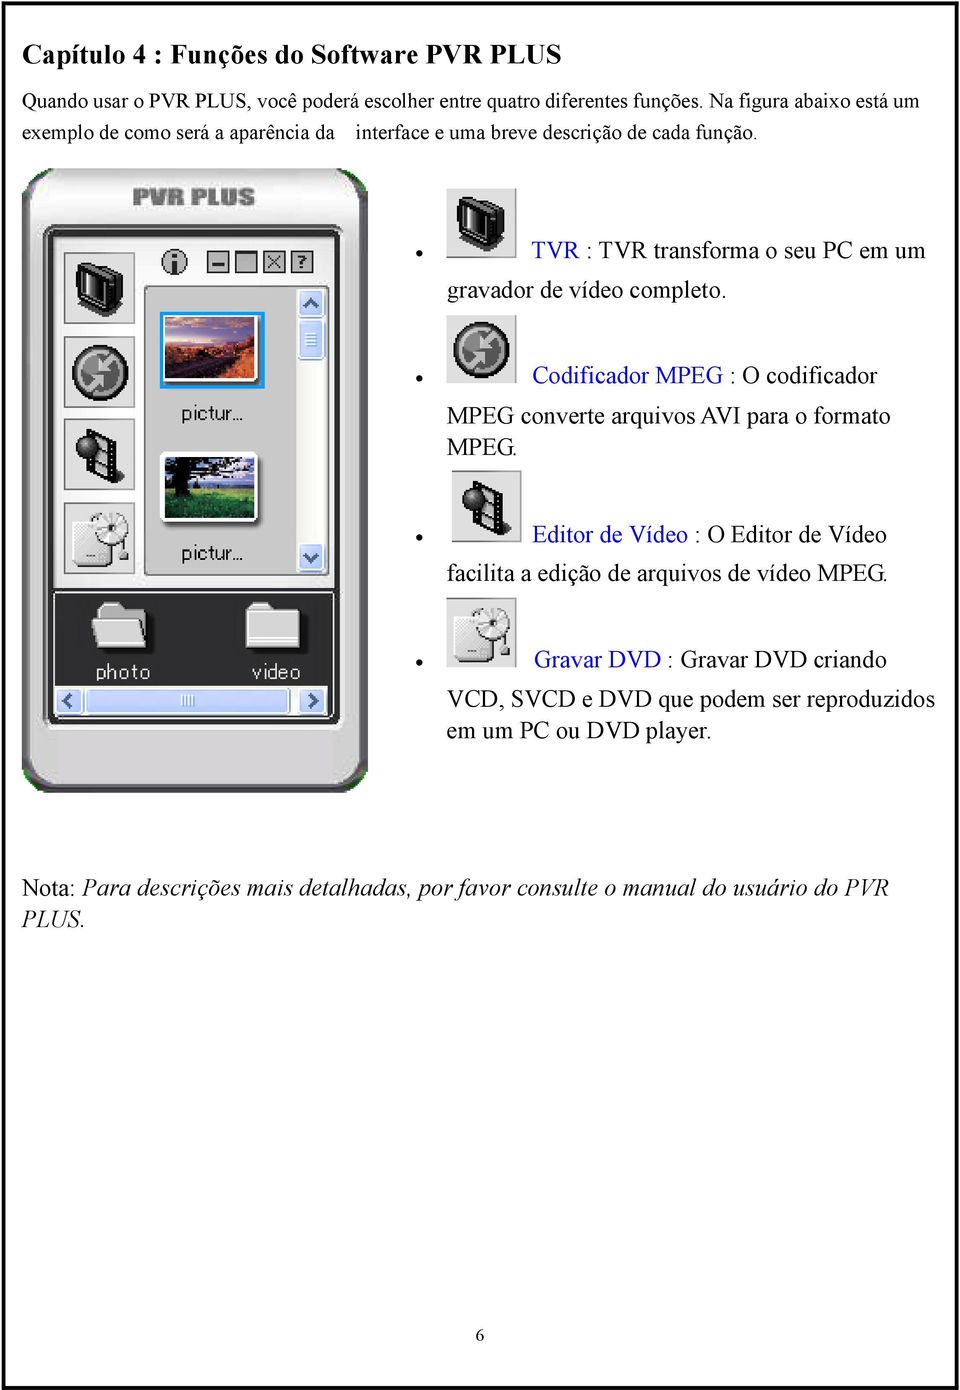 TVR : TVR transforma o seu PC em um gravador de vídeo completo. Codificador MPEG : O codificador MPEG converte arquivos AVI para o formato MPEG.